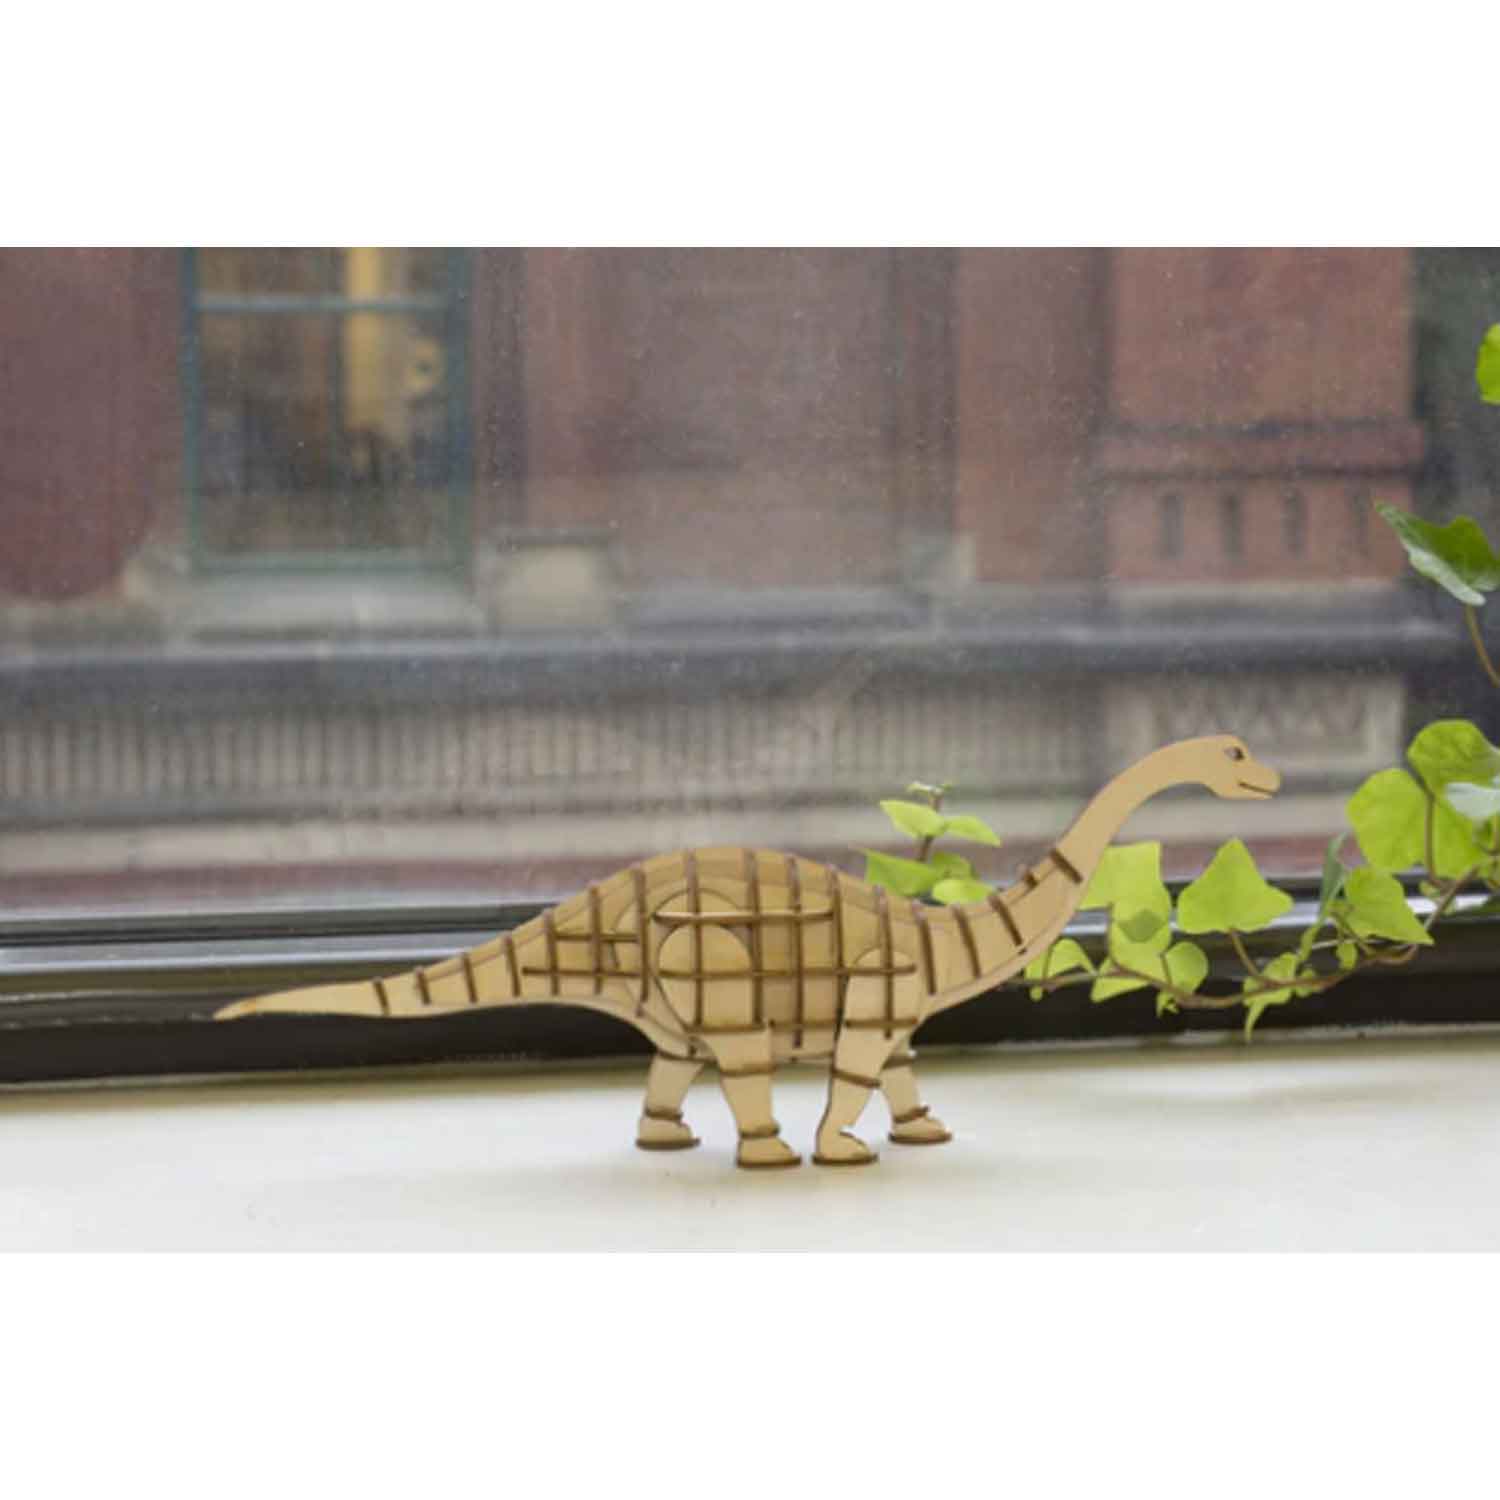 Dinosaurier-Apatosaurus-3D-Holzpuzzle-v-Kikkerland-berlindeluxe-dinosaurier-holz-anger-hals-fenster